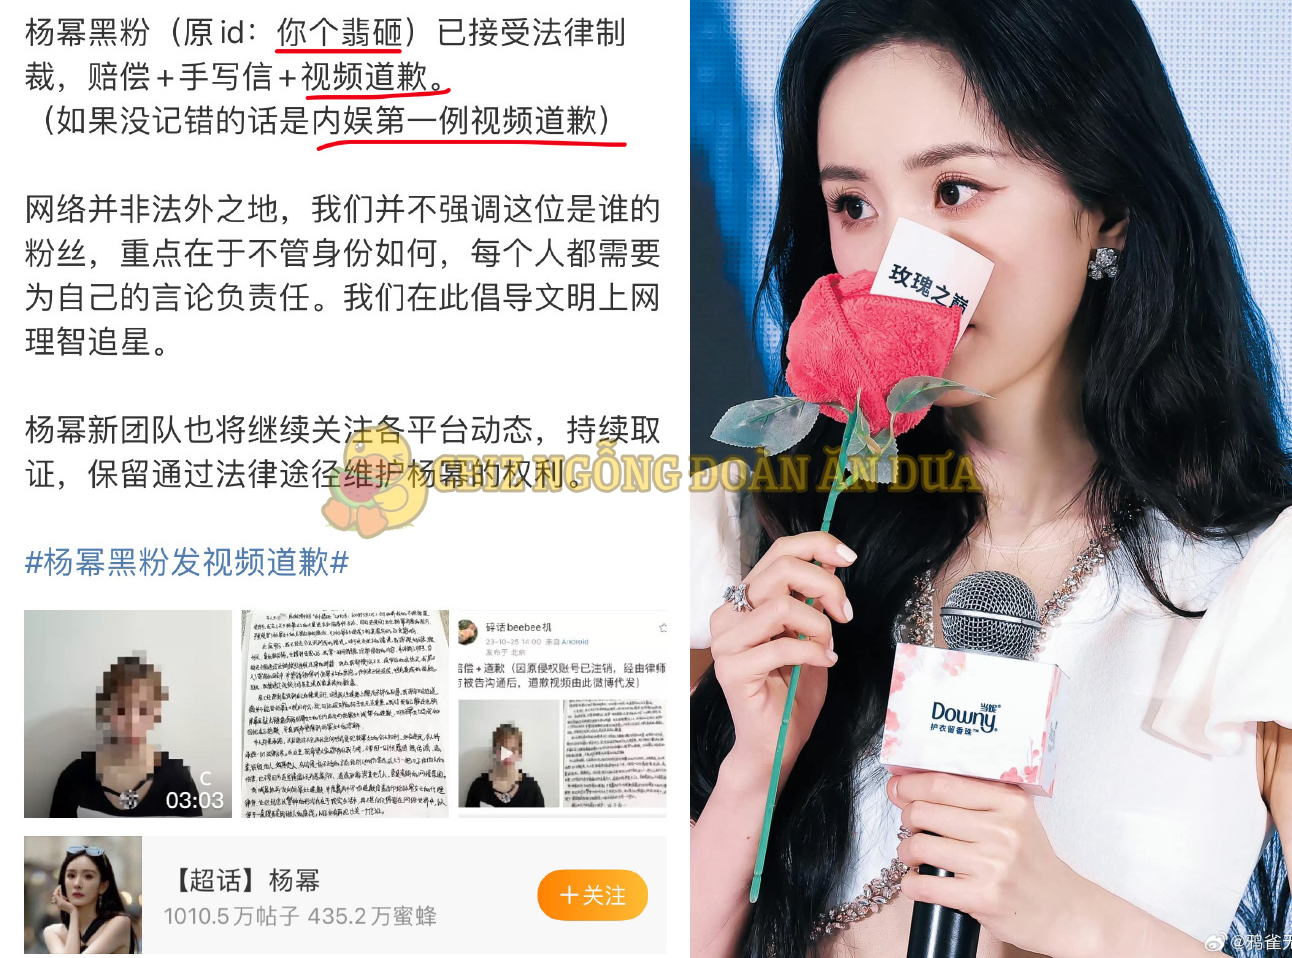 Dương Mịch thắng kiện antifan: Đăng video công khai xin lỗi, viết thư tay và bồi thường cho nữ diễn viên - Ảnh 1